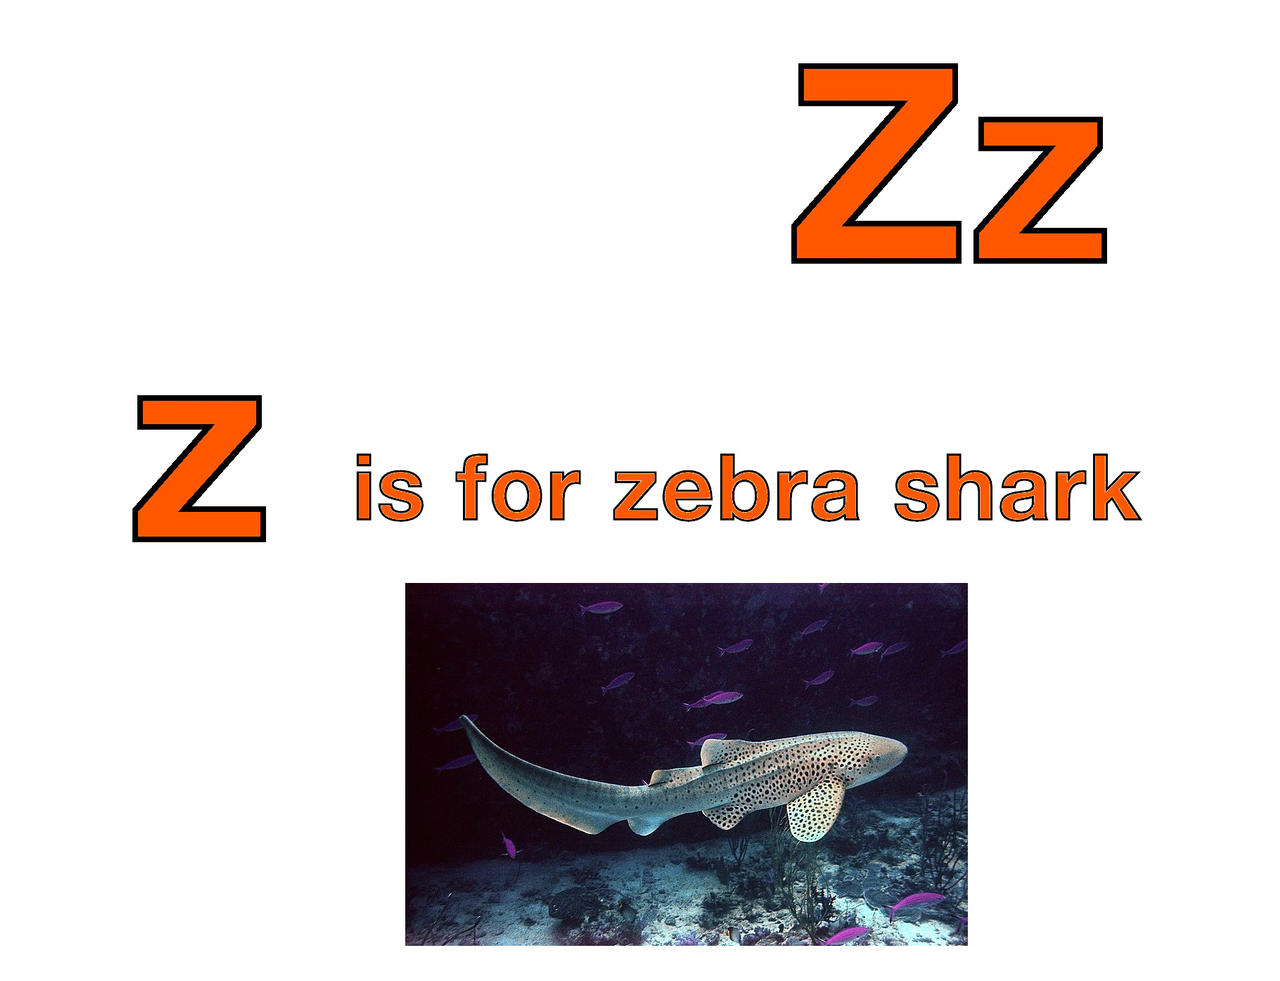 Z is for Zebra Shark by EmmettLovesAnimals on DeviantArt